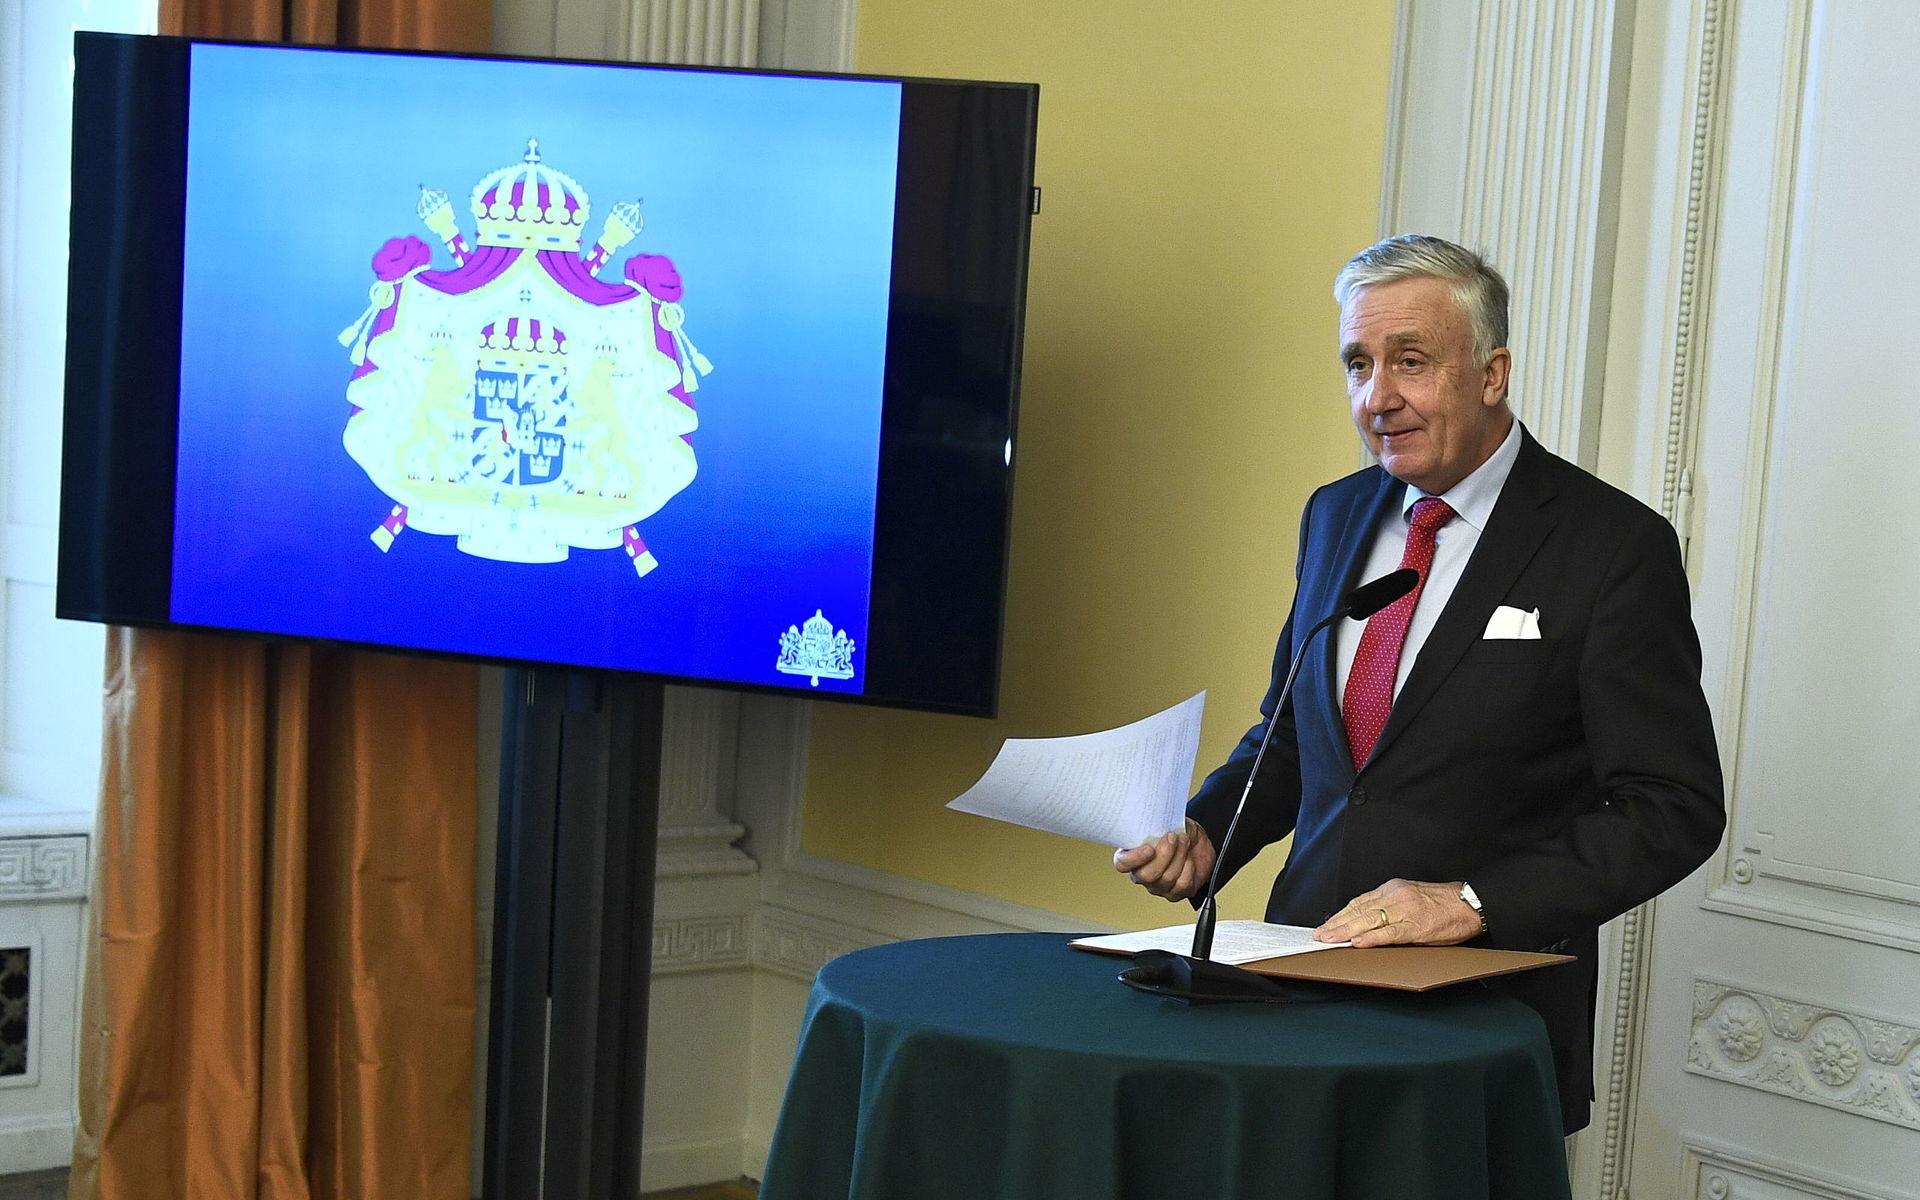 Riksmarskalk Fredrik Wersäll presenterar förändringarna inom kungahuset under en pressträff på Kungliga slottet.